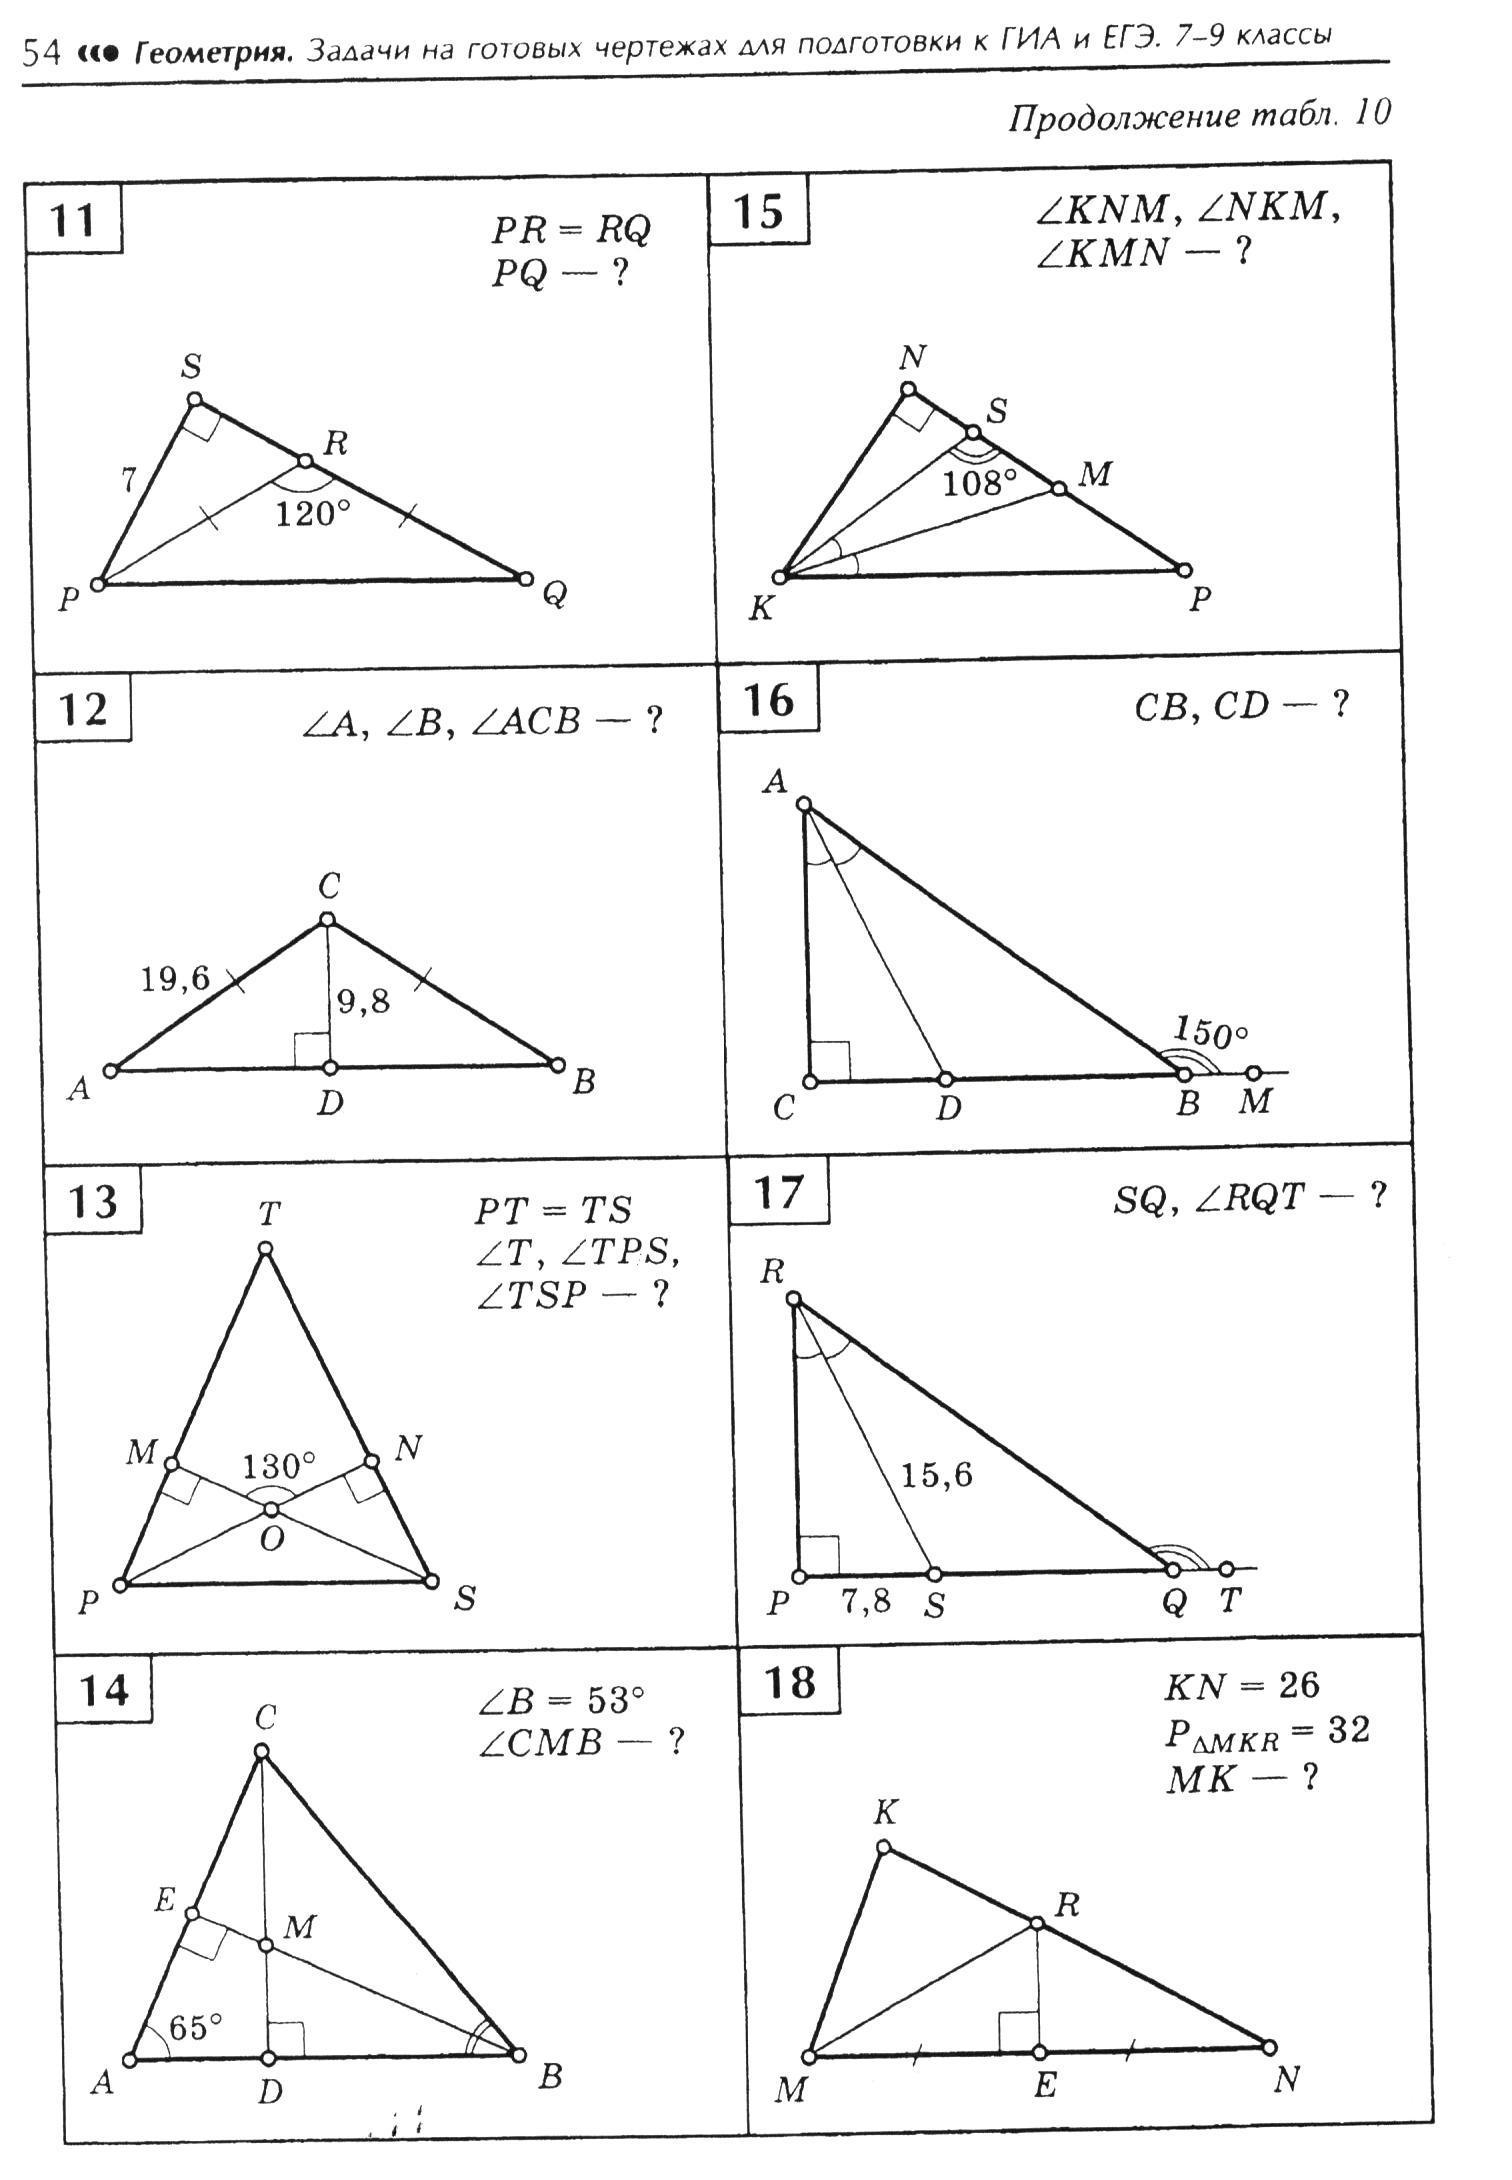 Задачи на чертежах 7 9 классы. Задачи на готовых чертежах 7 класс геометрия Атанасян. Задачи по геометрии на готовых чертежах 7-9 классы Атанасян. Геометрия задачи на готовых чертежах 7-9 классы Атанасян. 7 Кл геометрия задачи на готовых чертежах.